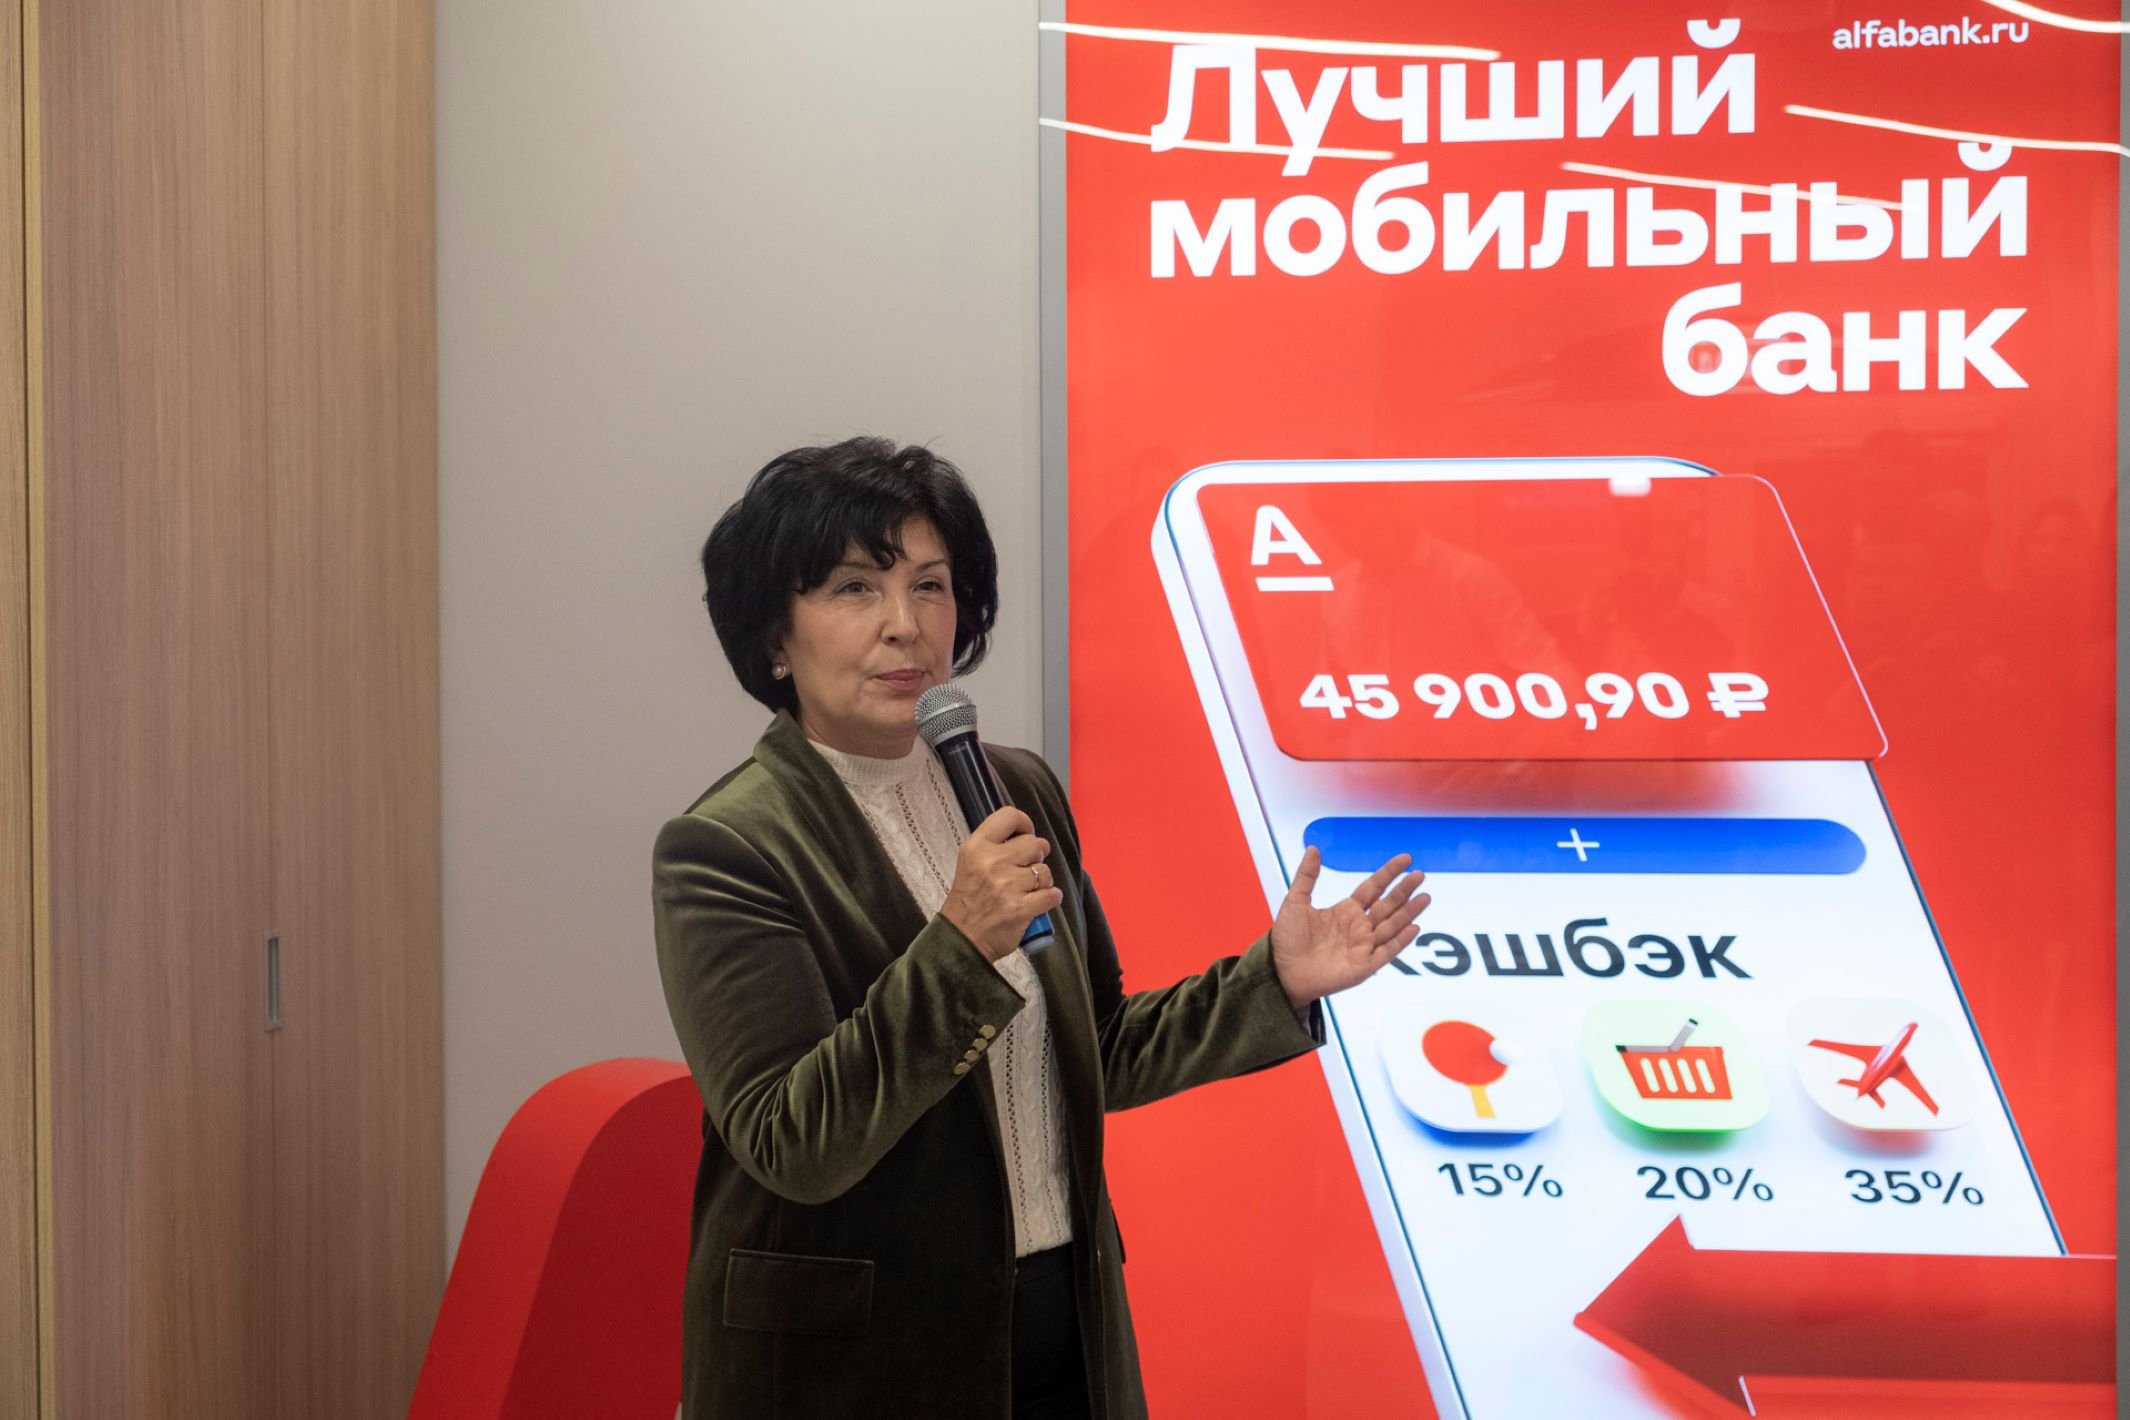 Альфа-Банк открыл первый офис в Егорьевске